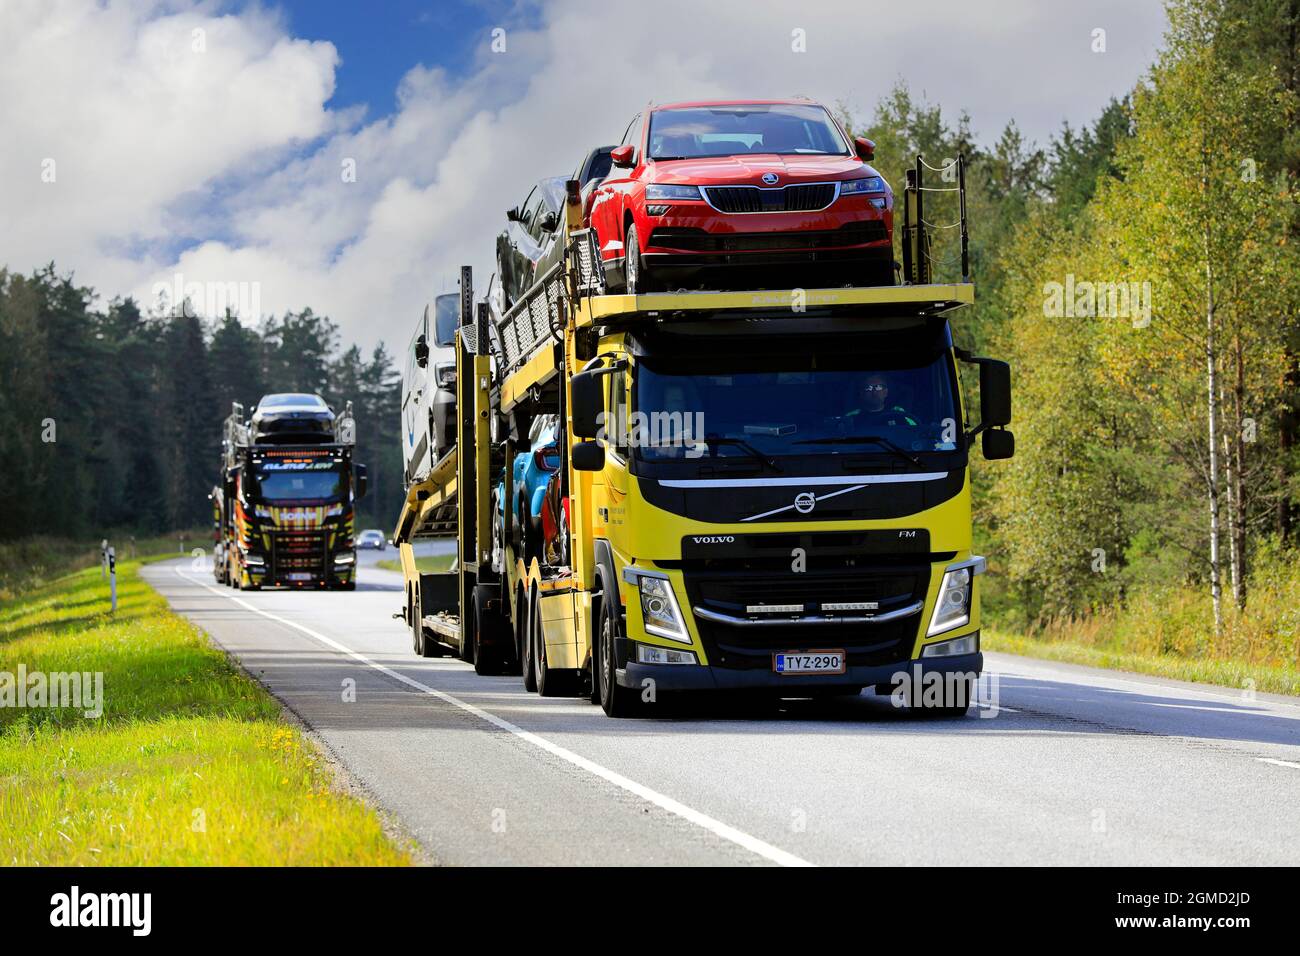 Due vettori di veicoli, il veicolo FM Volvo giallo nella parte anteriore, trasportano nuove auto sulla strada 52 dal porto di Hanko alla terraferma. Raasepori, Finlandia. 9 settembre 2021. Foto Stock